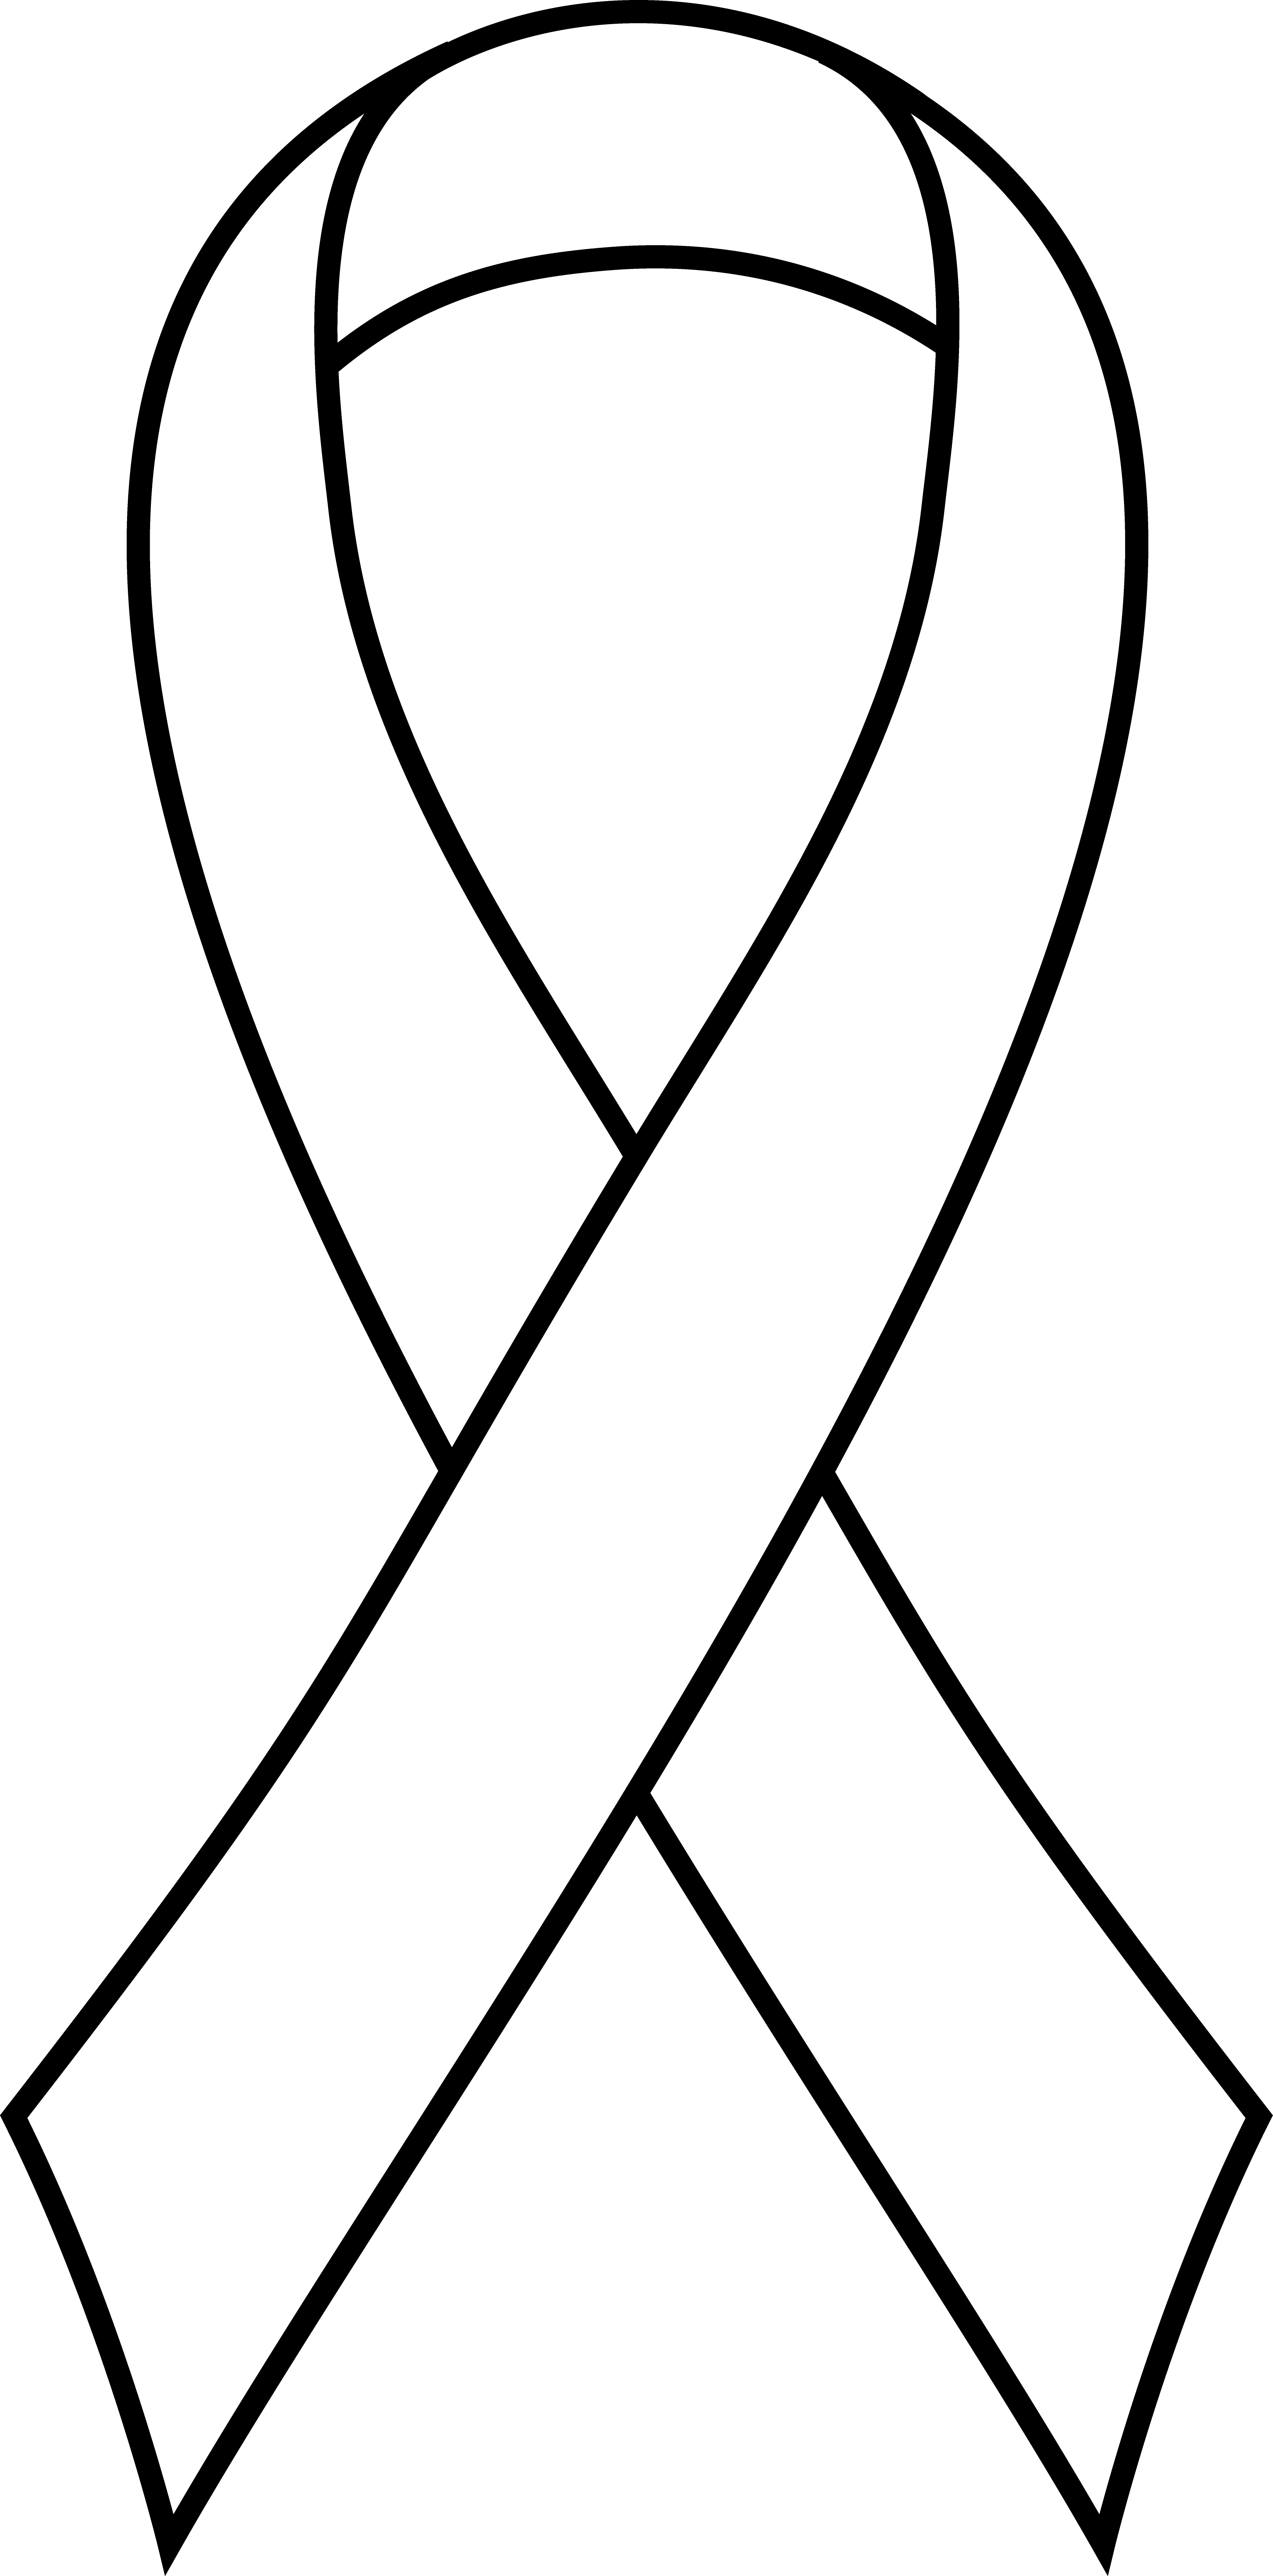 awareness ribbon clipart - Awareness Ribbon Clipart